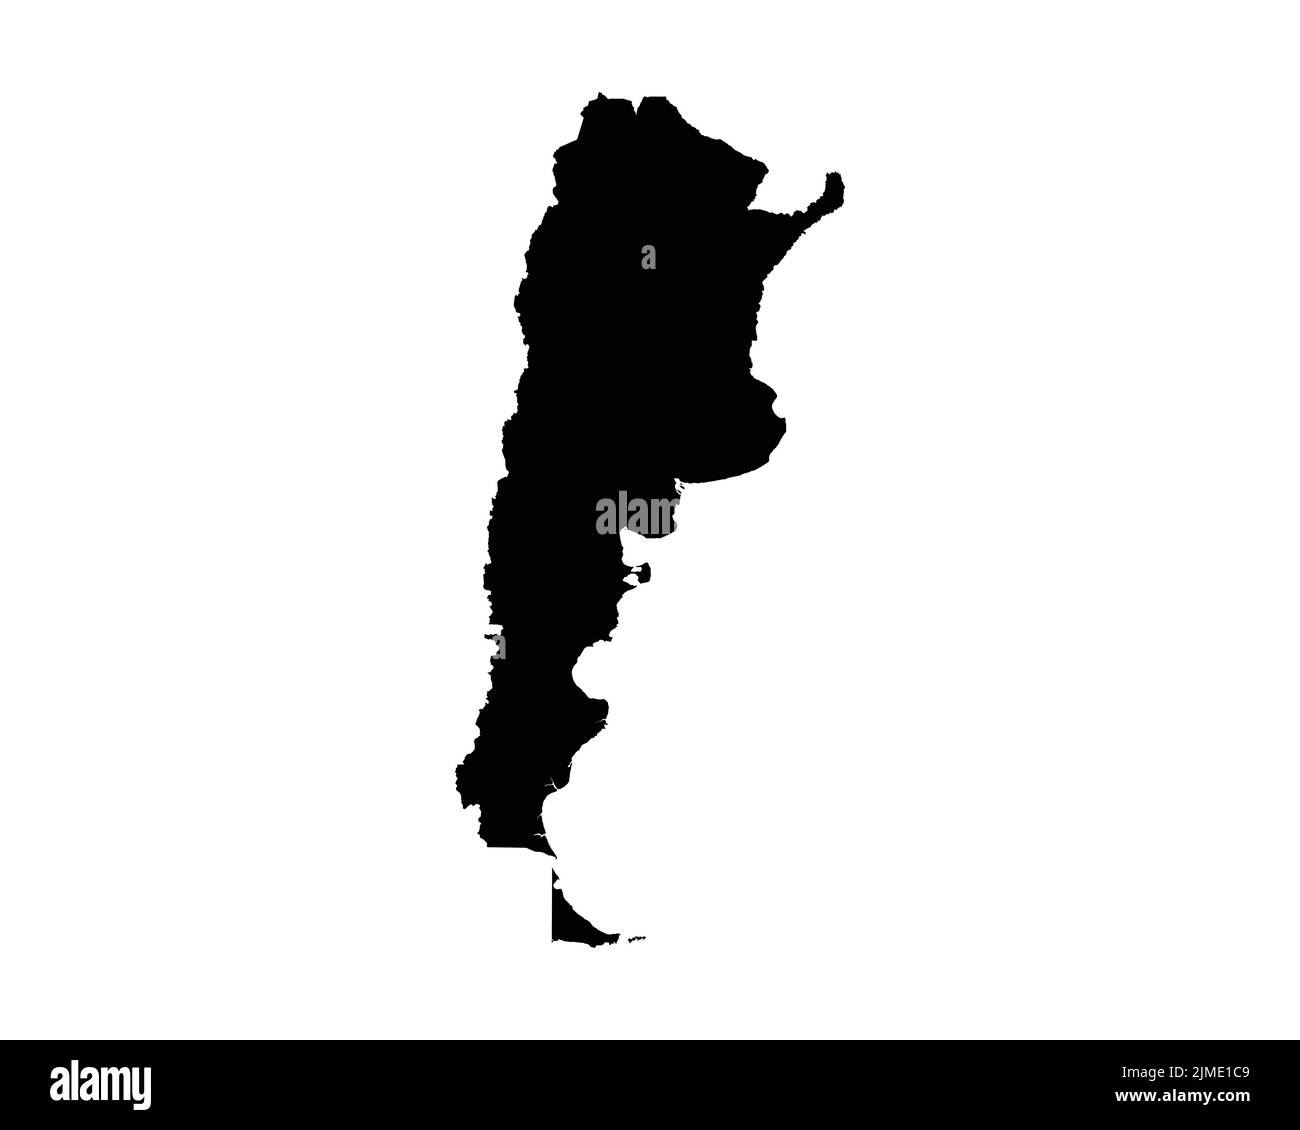 Karte Argentinien. Argentinische Landeskarte. Argentinische Schwarz-Weiß-Landesdarstellung Grenzlinie Grenzform Geographie Territorium EPS Vektor Illustration C Stock Vektor